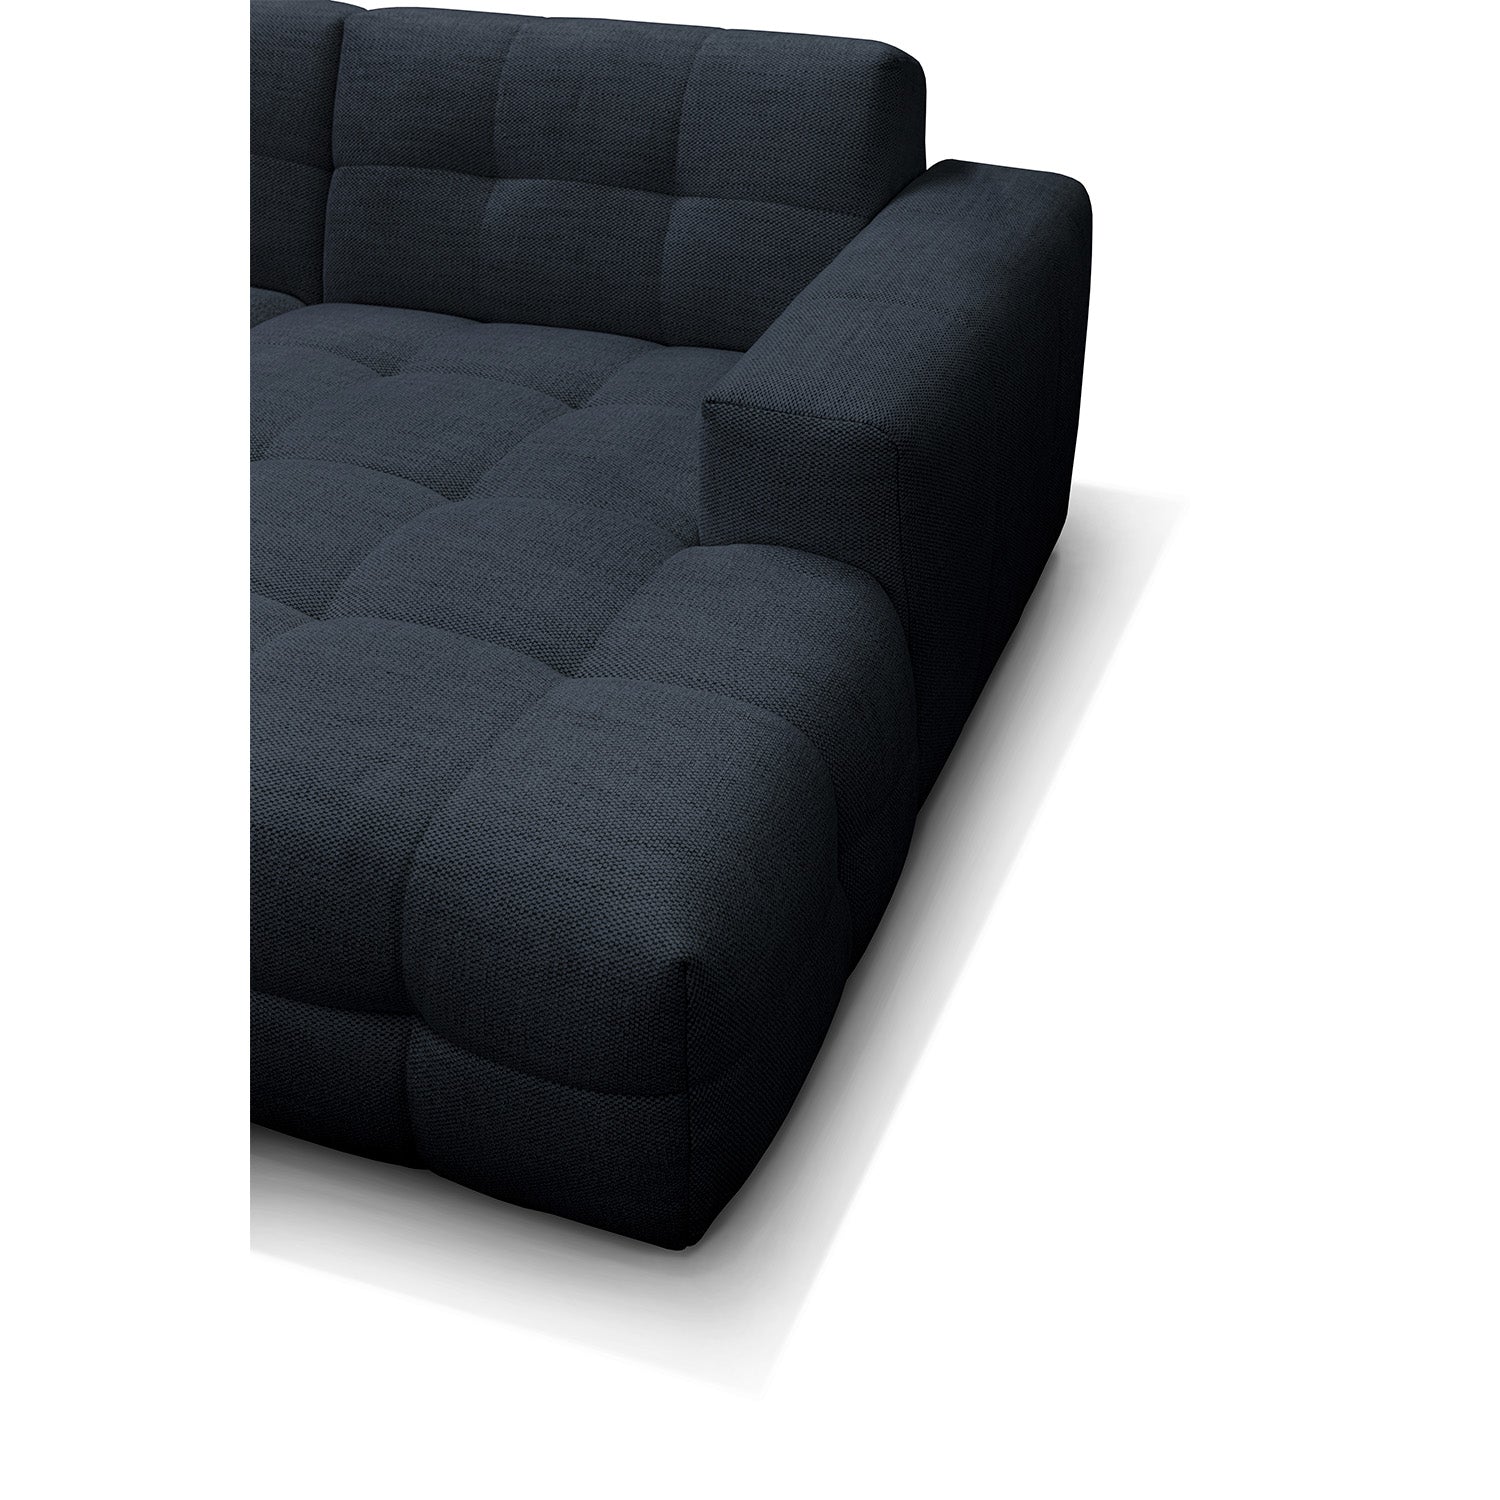 Paris chaiselong sofa højrevendt - Møbelkompagniet